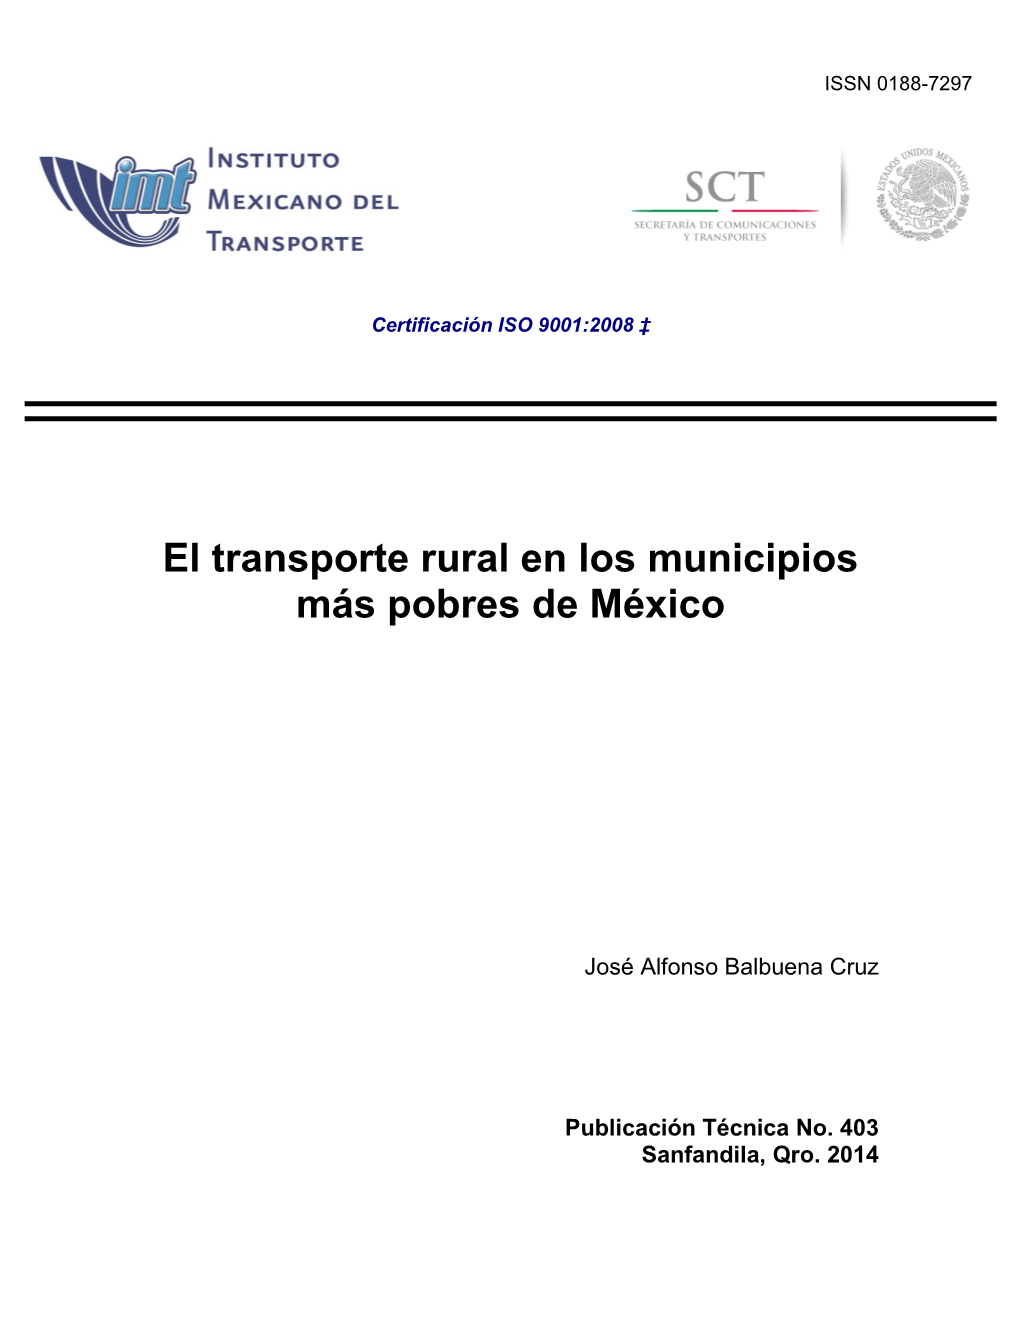 El Transporte Rural En Los Municipios Más Pobres De México